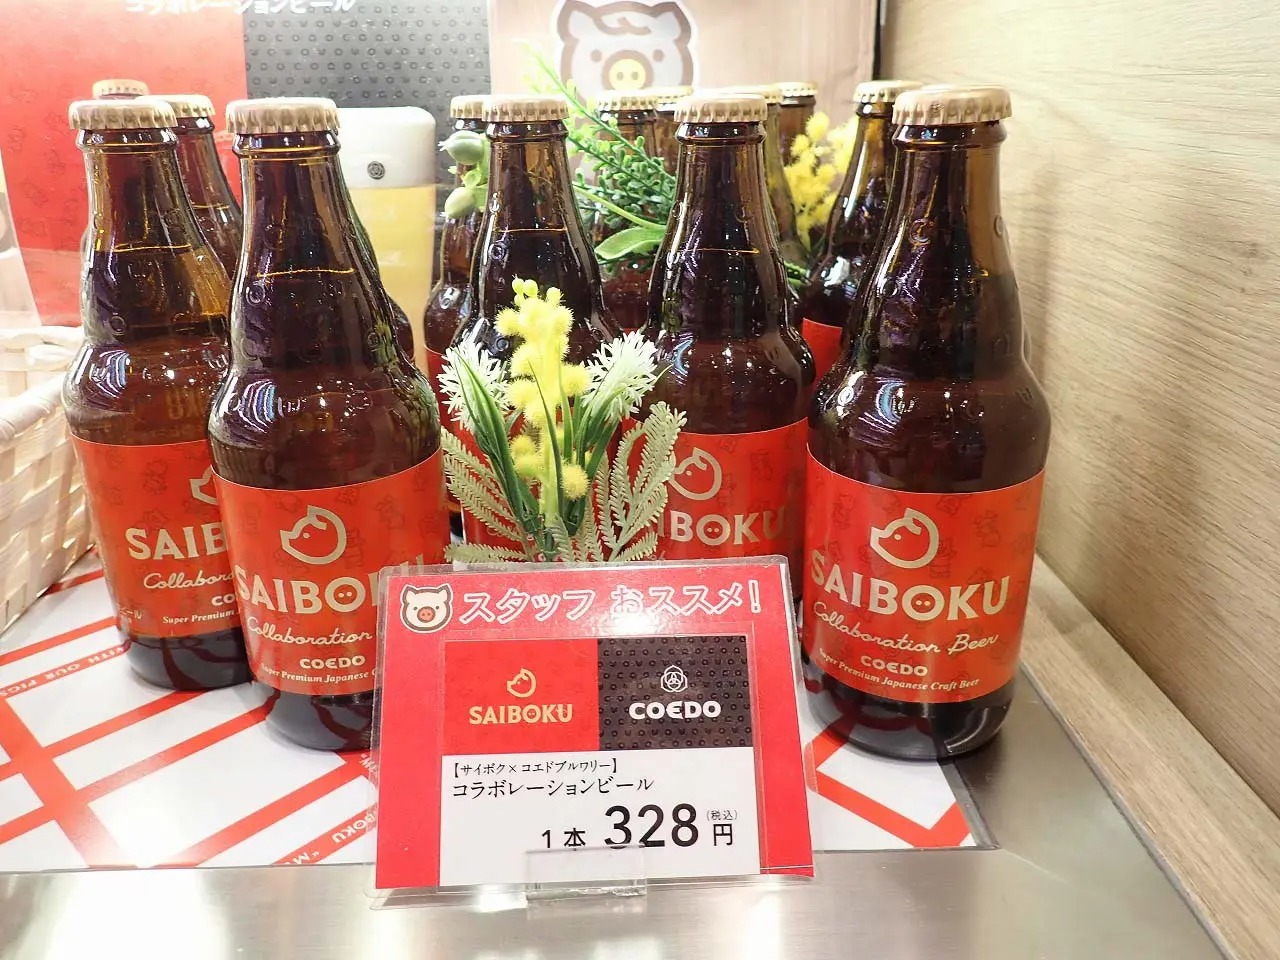 こちらは2022年春に発売された「サイボク」と「COEDOビール」のコラボ商品です